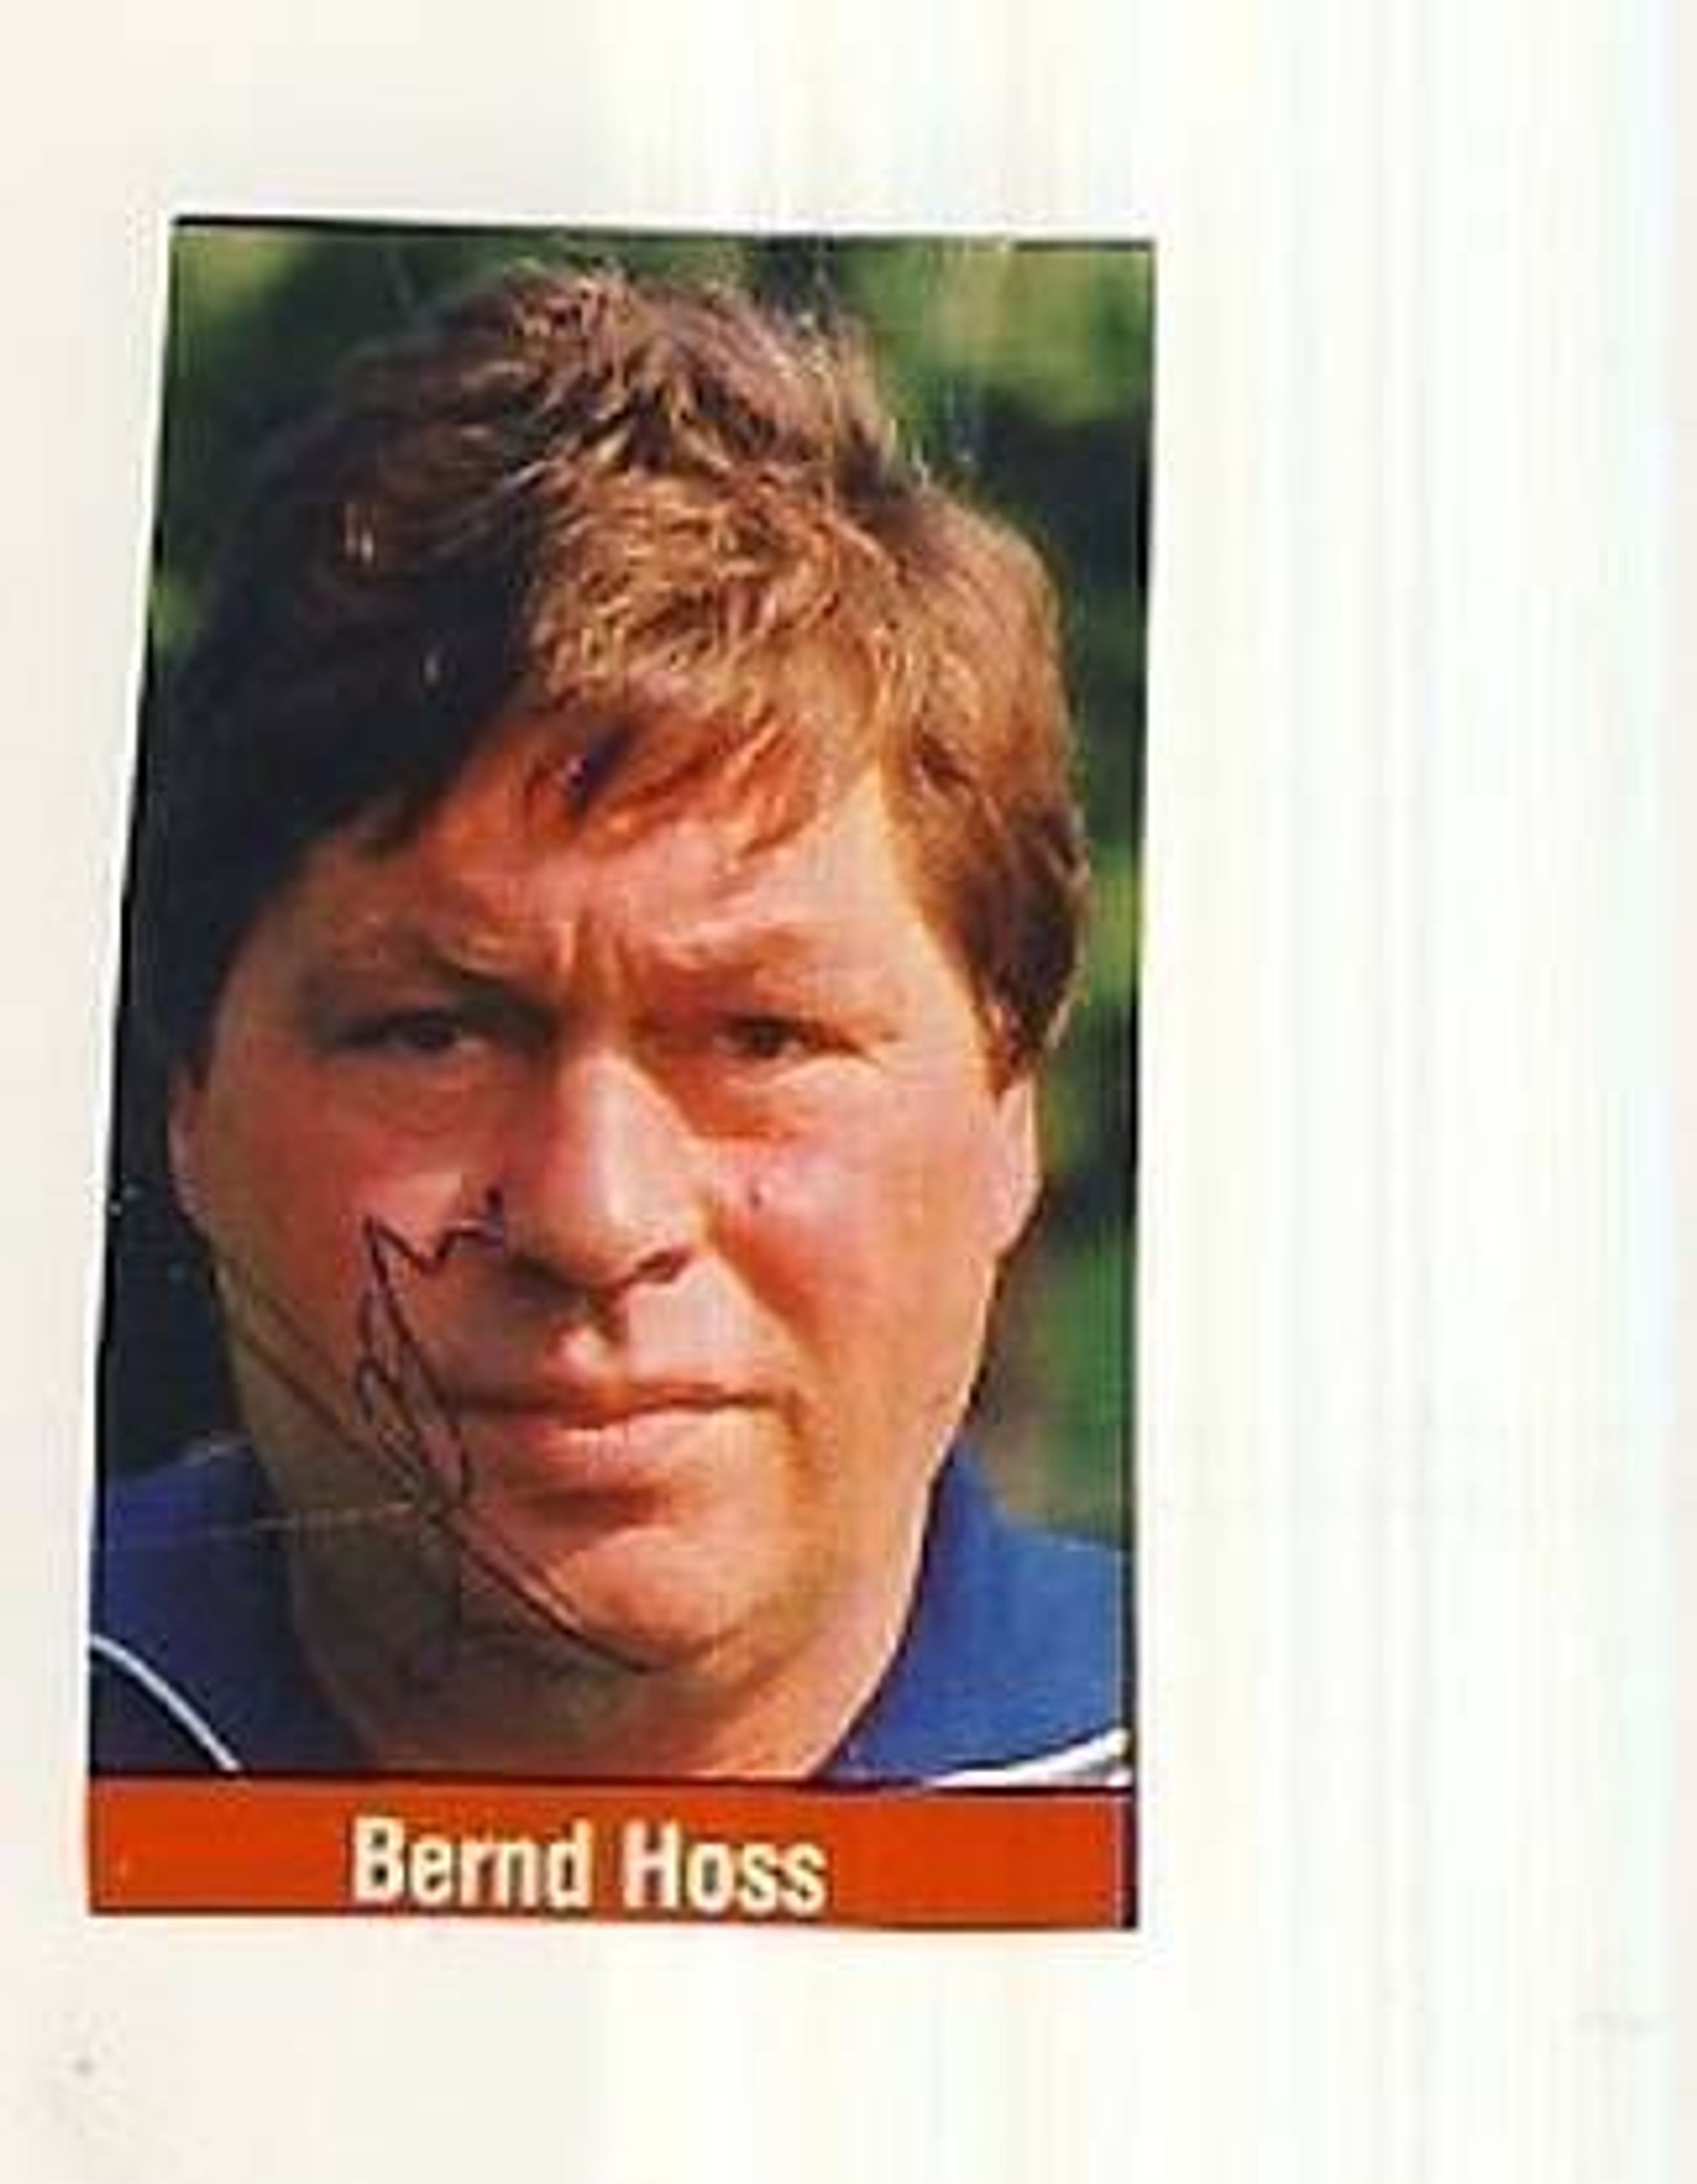 Bernd Hoss BW 90 Berlin Kicker Bild 80er Jahre + 354 kaufen bei Hood.de